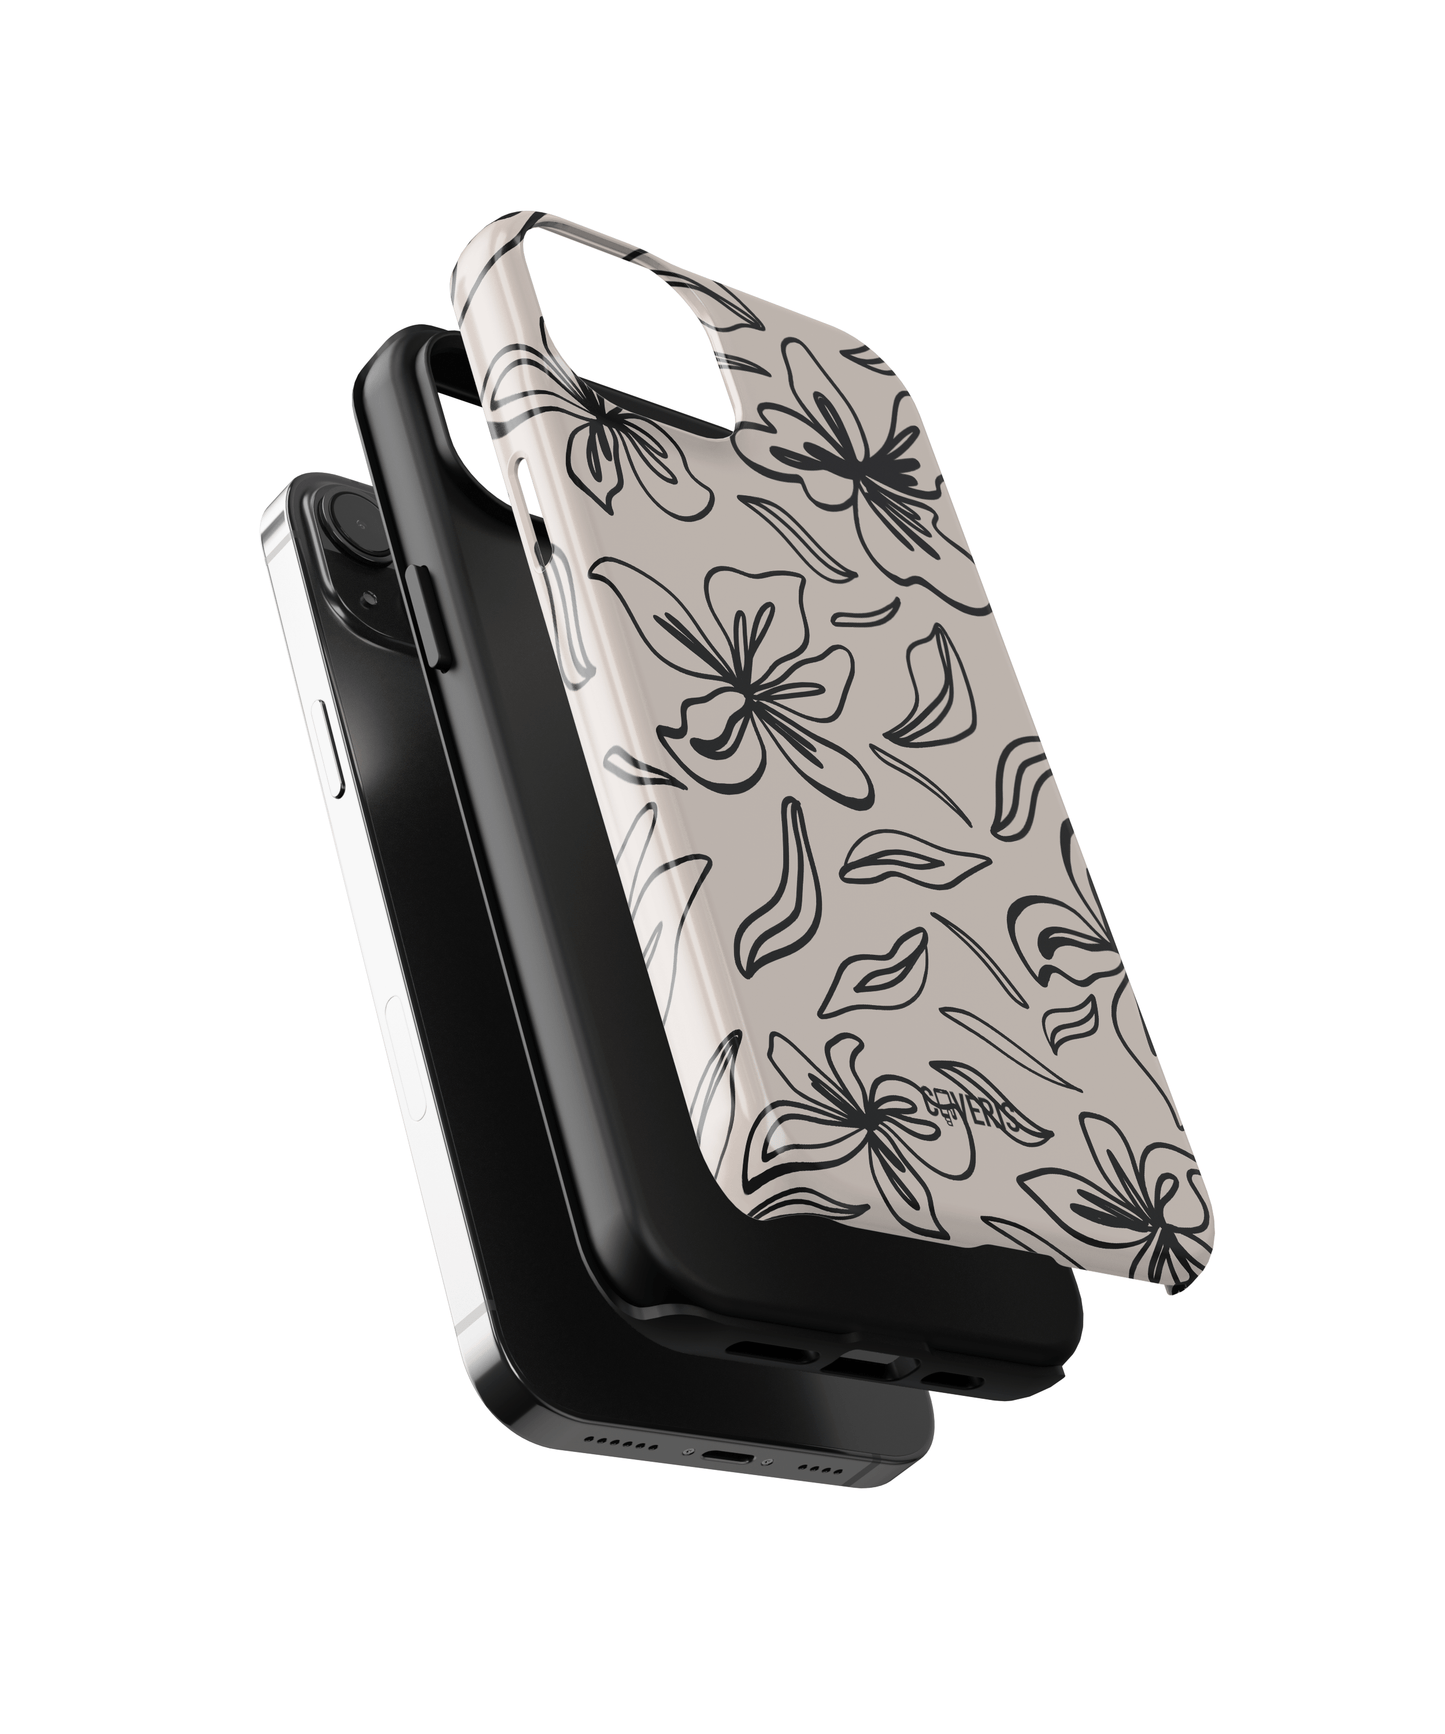 GardenGlam - iPhone 12 pro max phone case